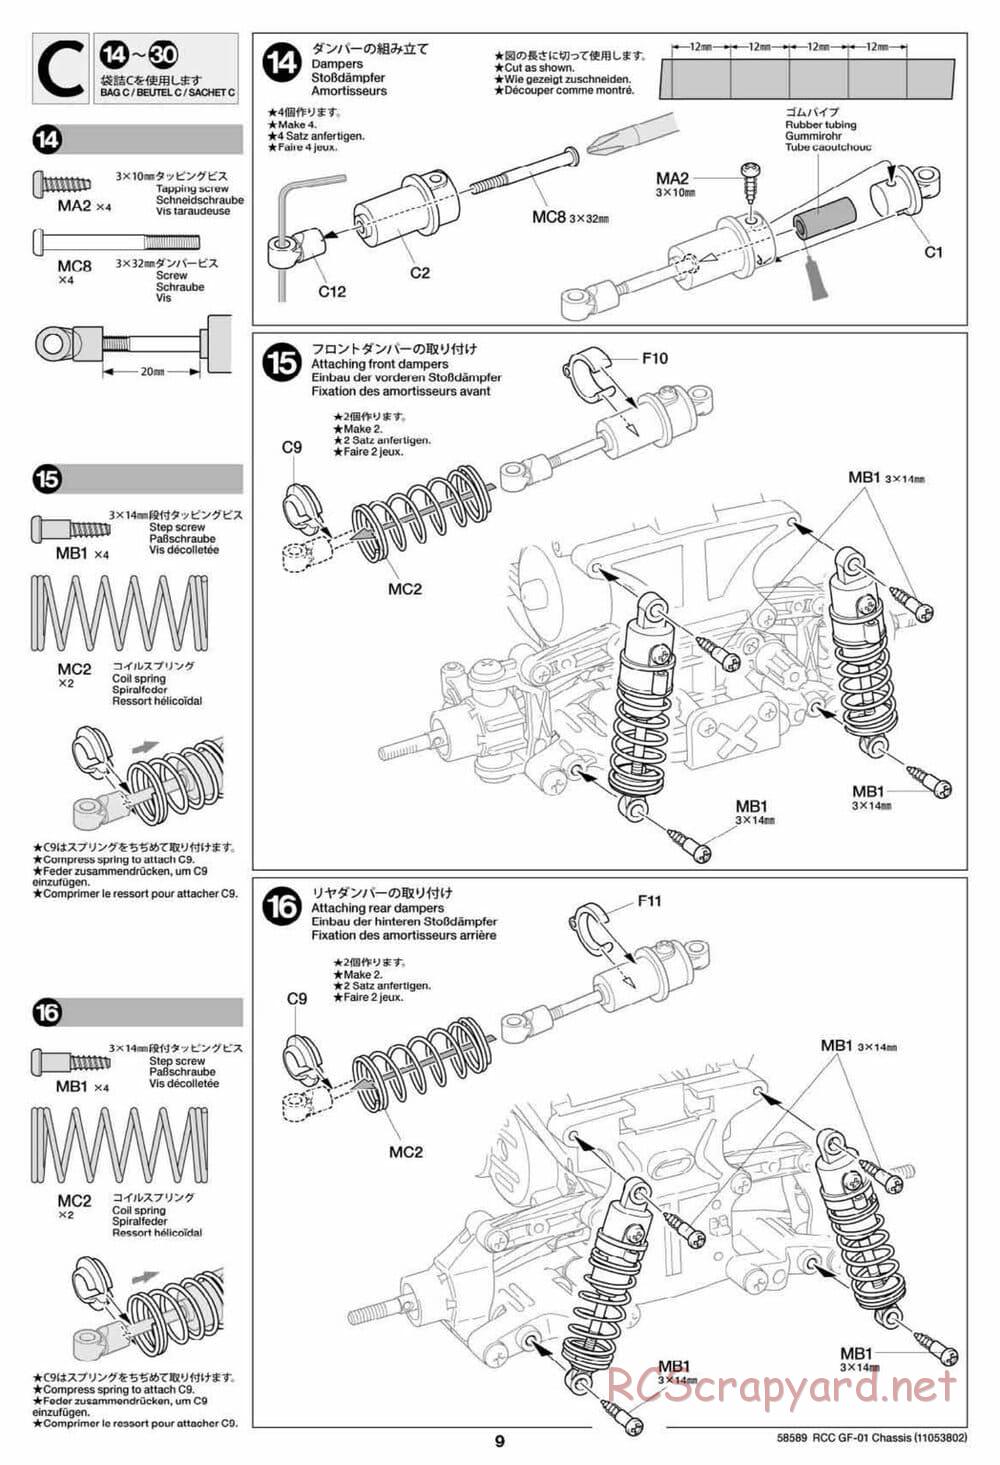 Tamiya - GF-01 Chassis - Manual - Page 9